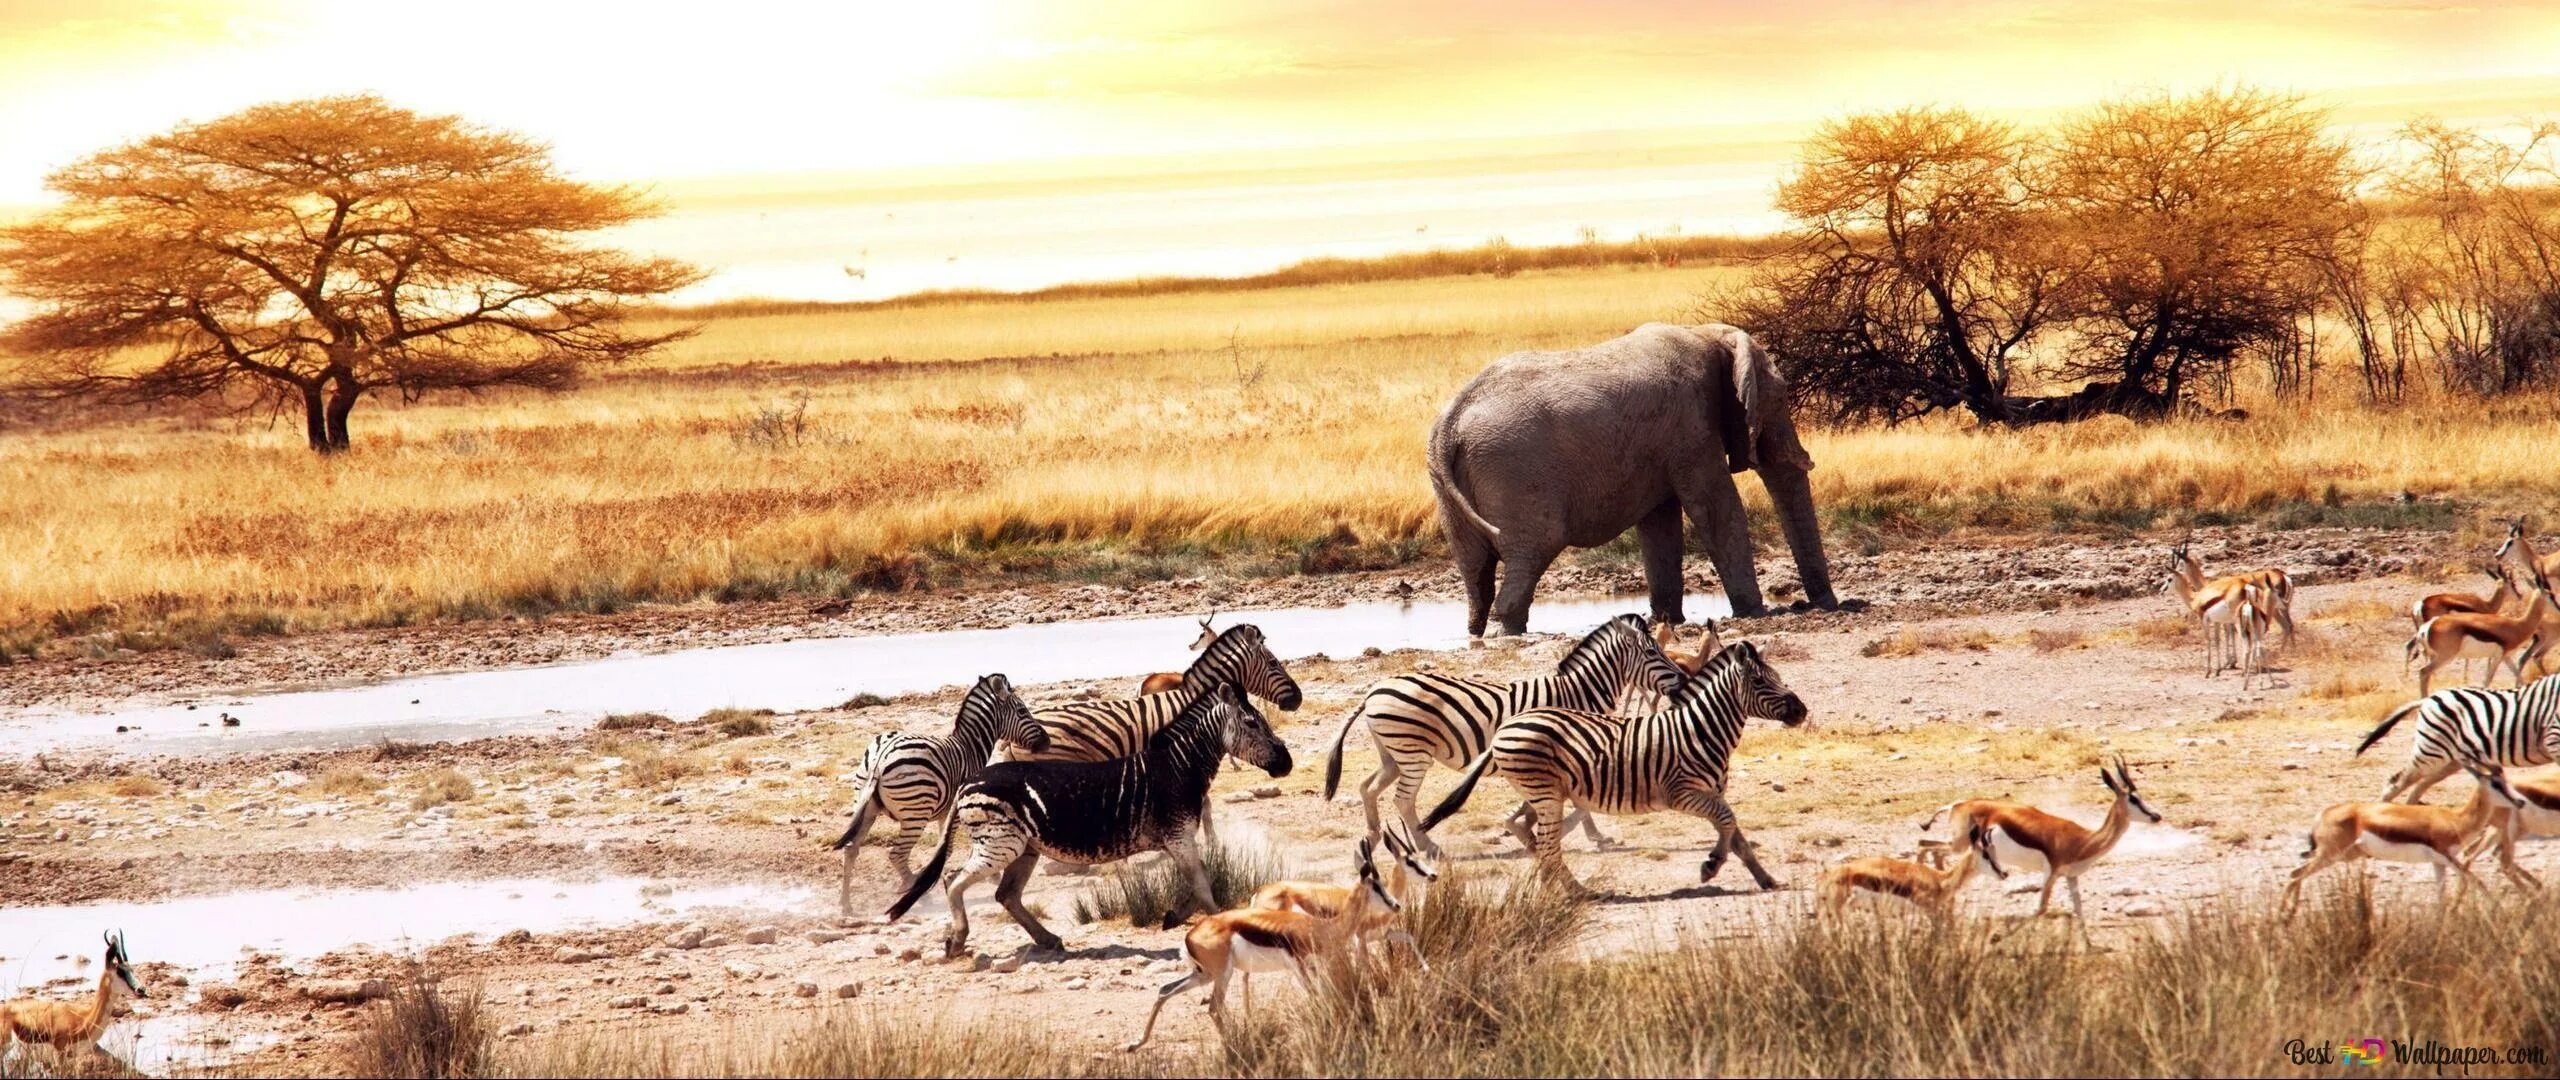 Про дикий мир. Африка панорама. Зебры в саванне. Животные саванны Южной Америки. Панорама Африки для детей.